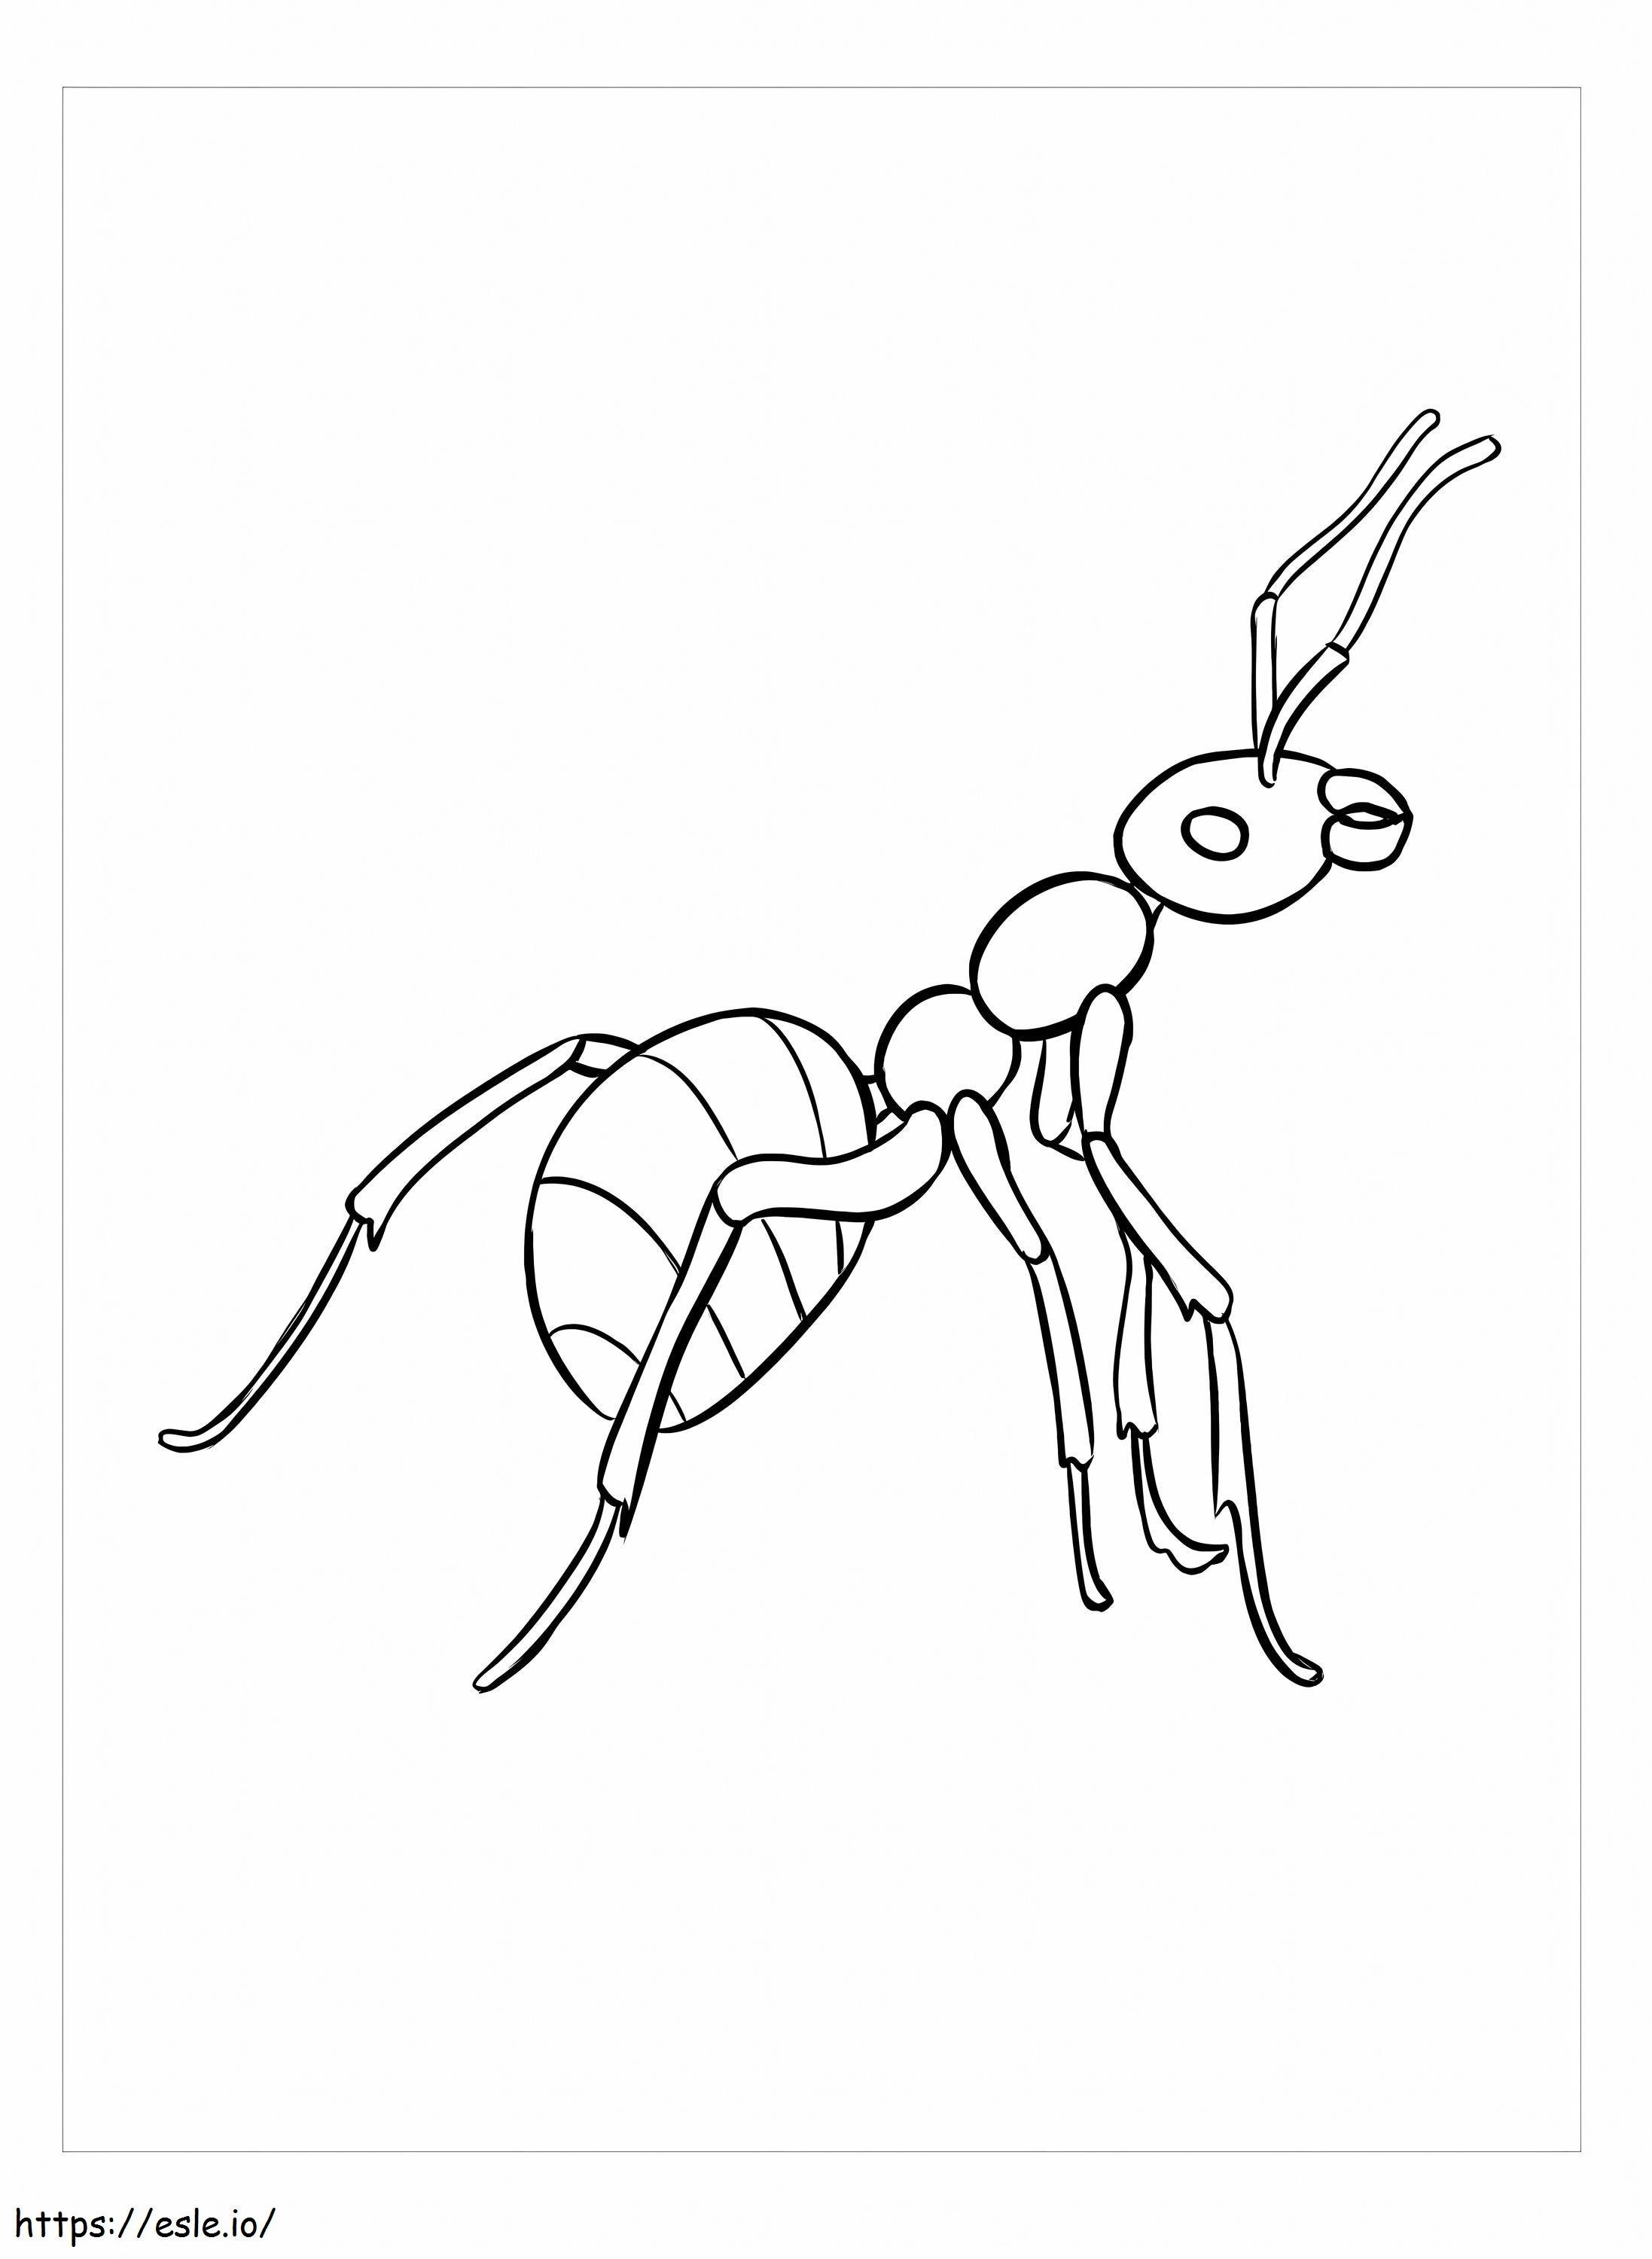 Imagini gratuite ale furnicilor de colorat